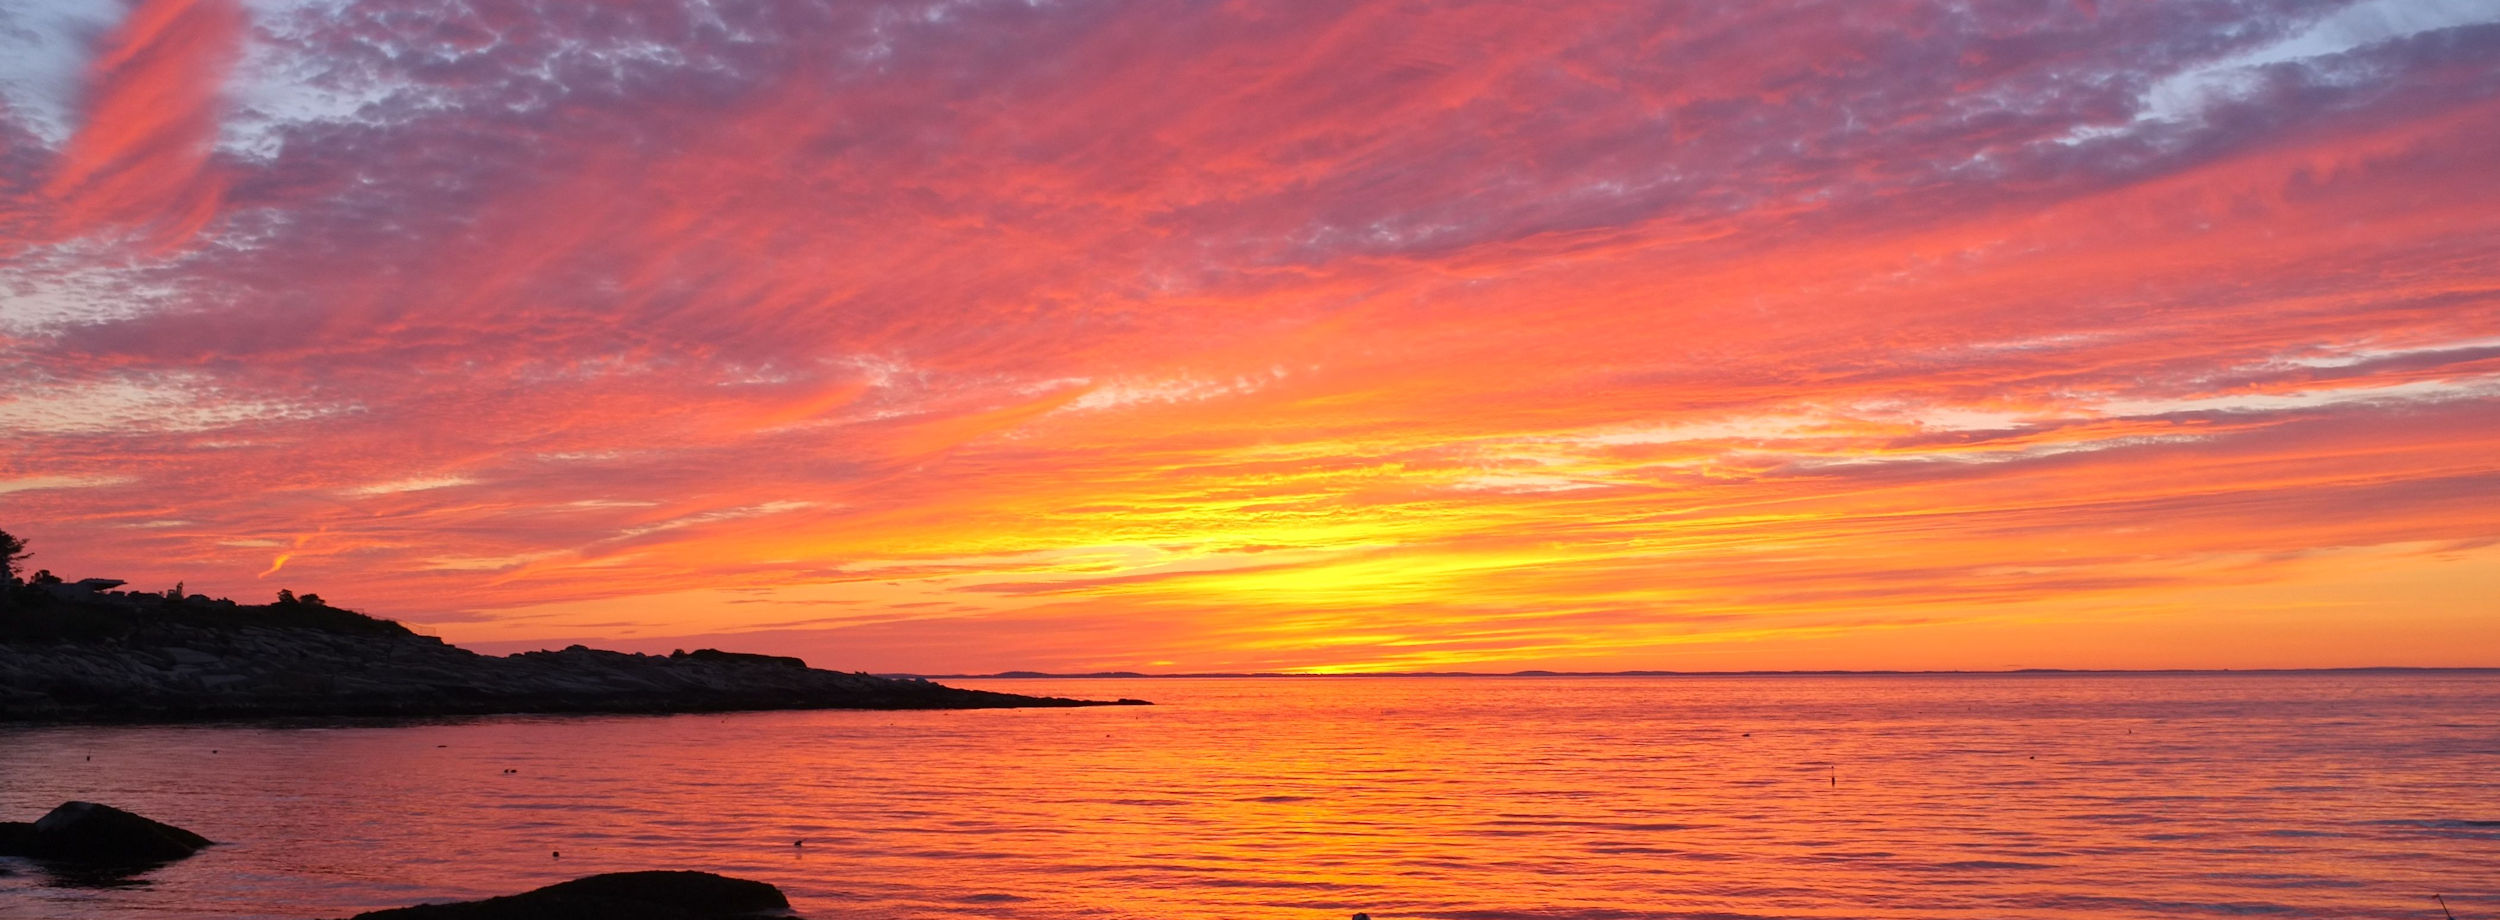 12 Best Sunsets on Cape Ann Massachusetts